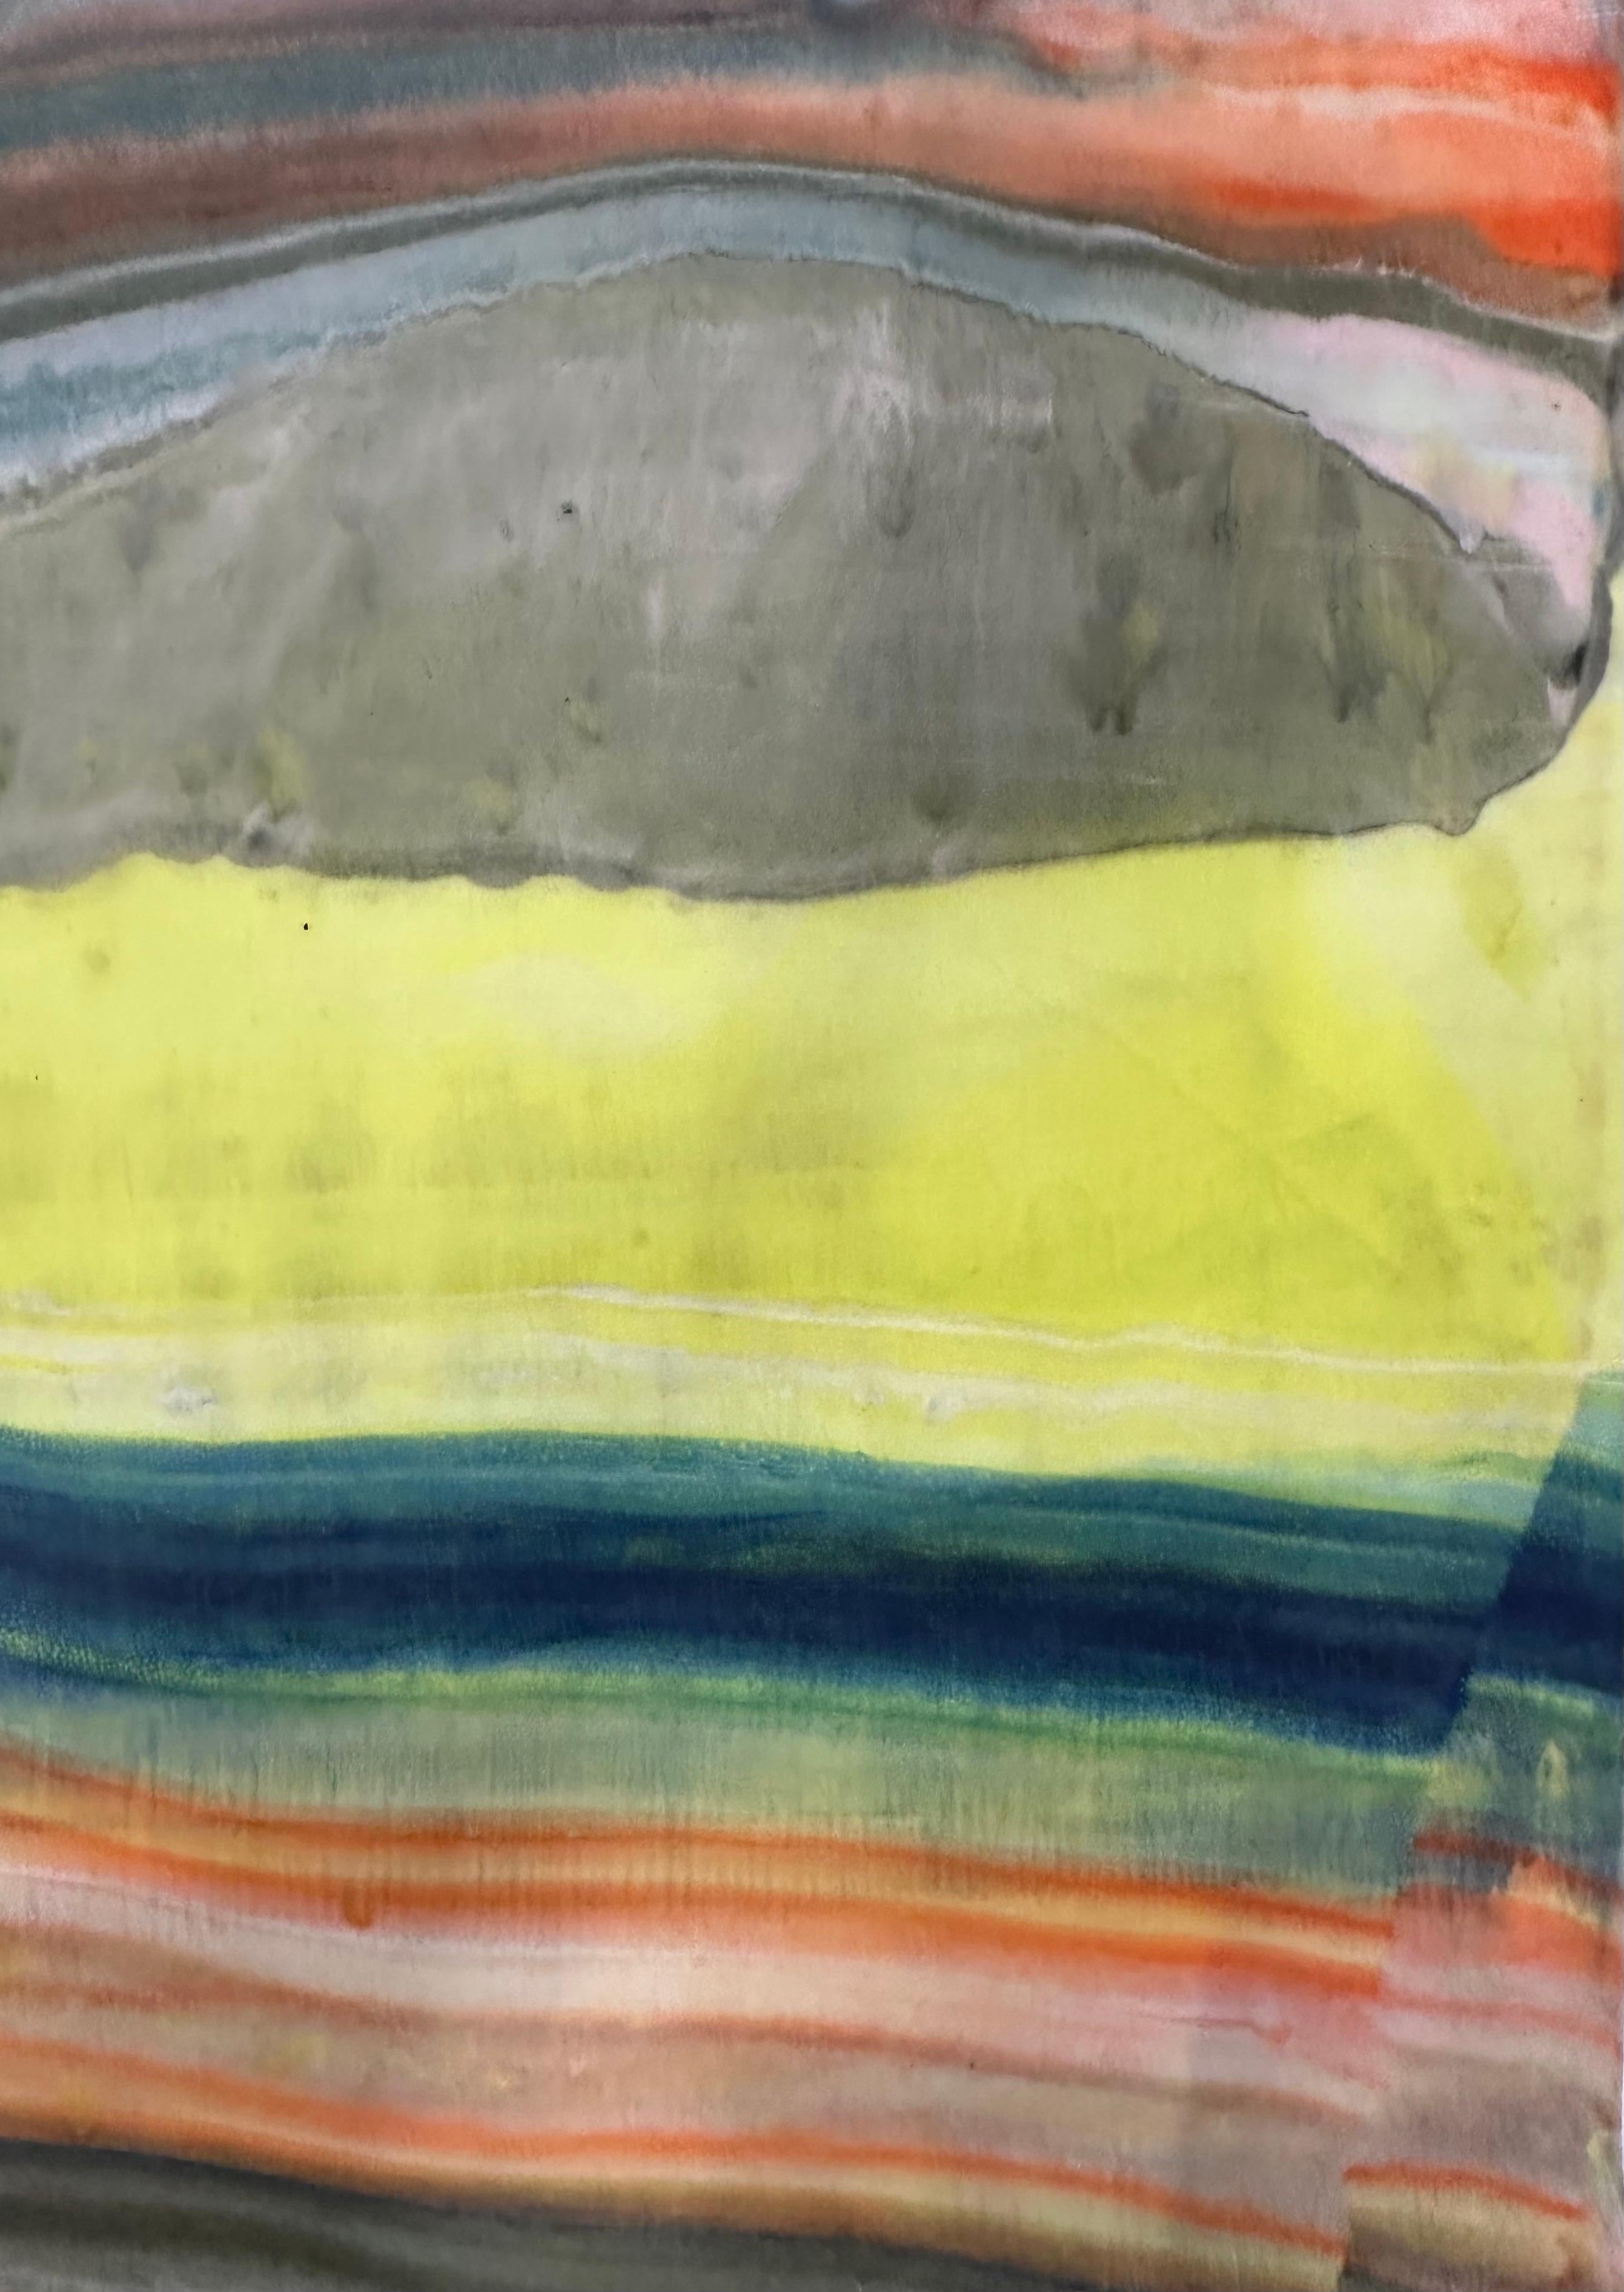 Talking to Rocks 28 de Laura Moriarty est un monotype encaustique multicolore sur papier kozo. Des couches de cire d'abeille pigmentée sur du papier léger créent une composition ondulante suggérant des couches de la croûte terrestre et des